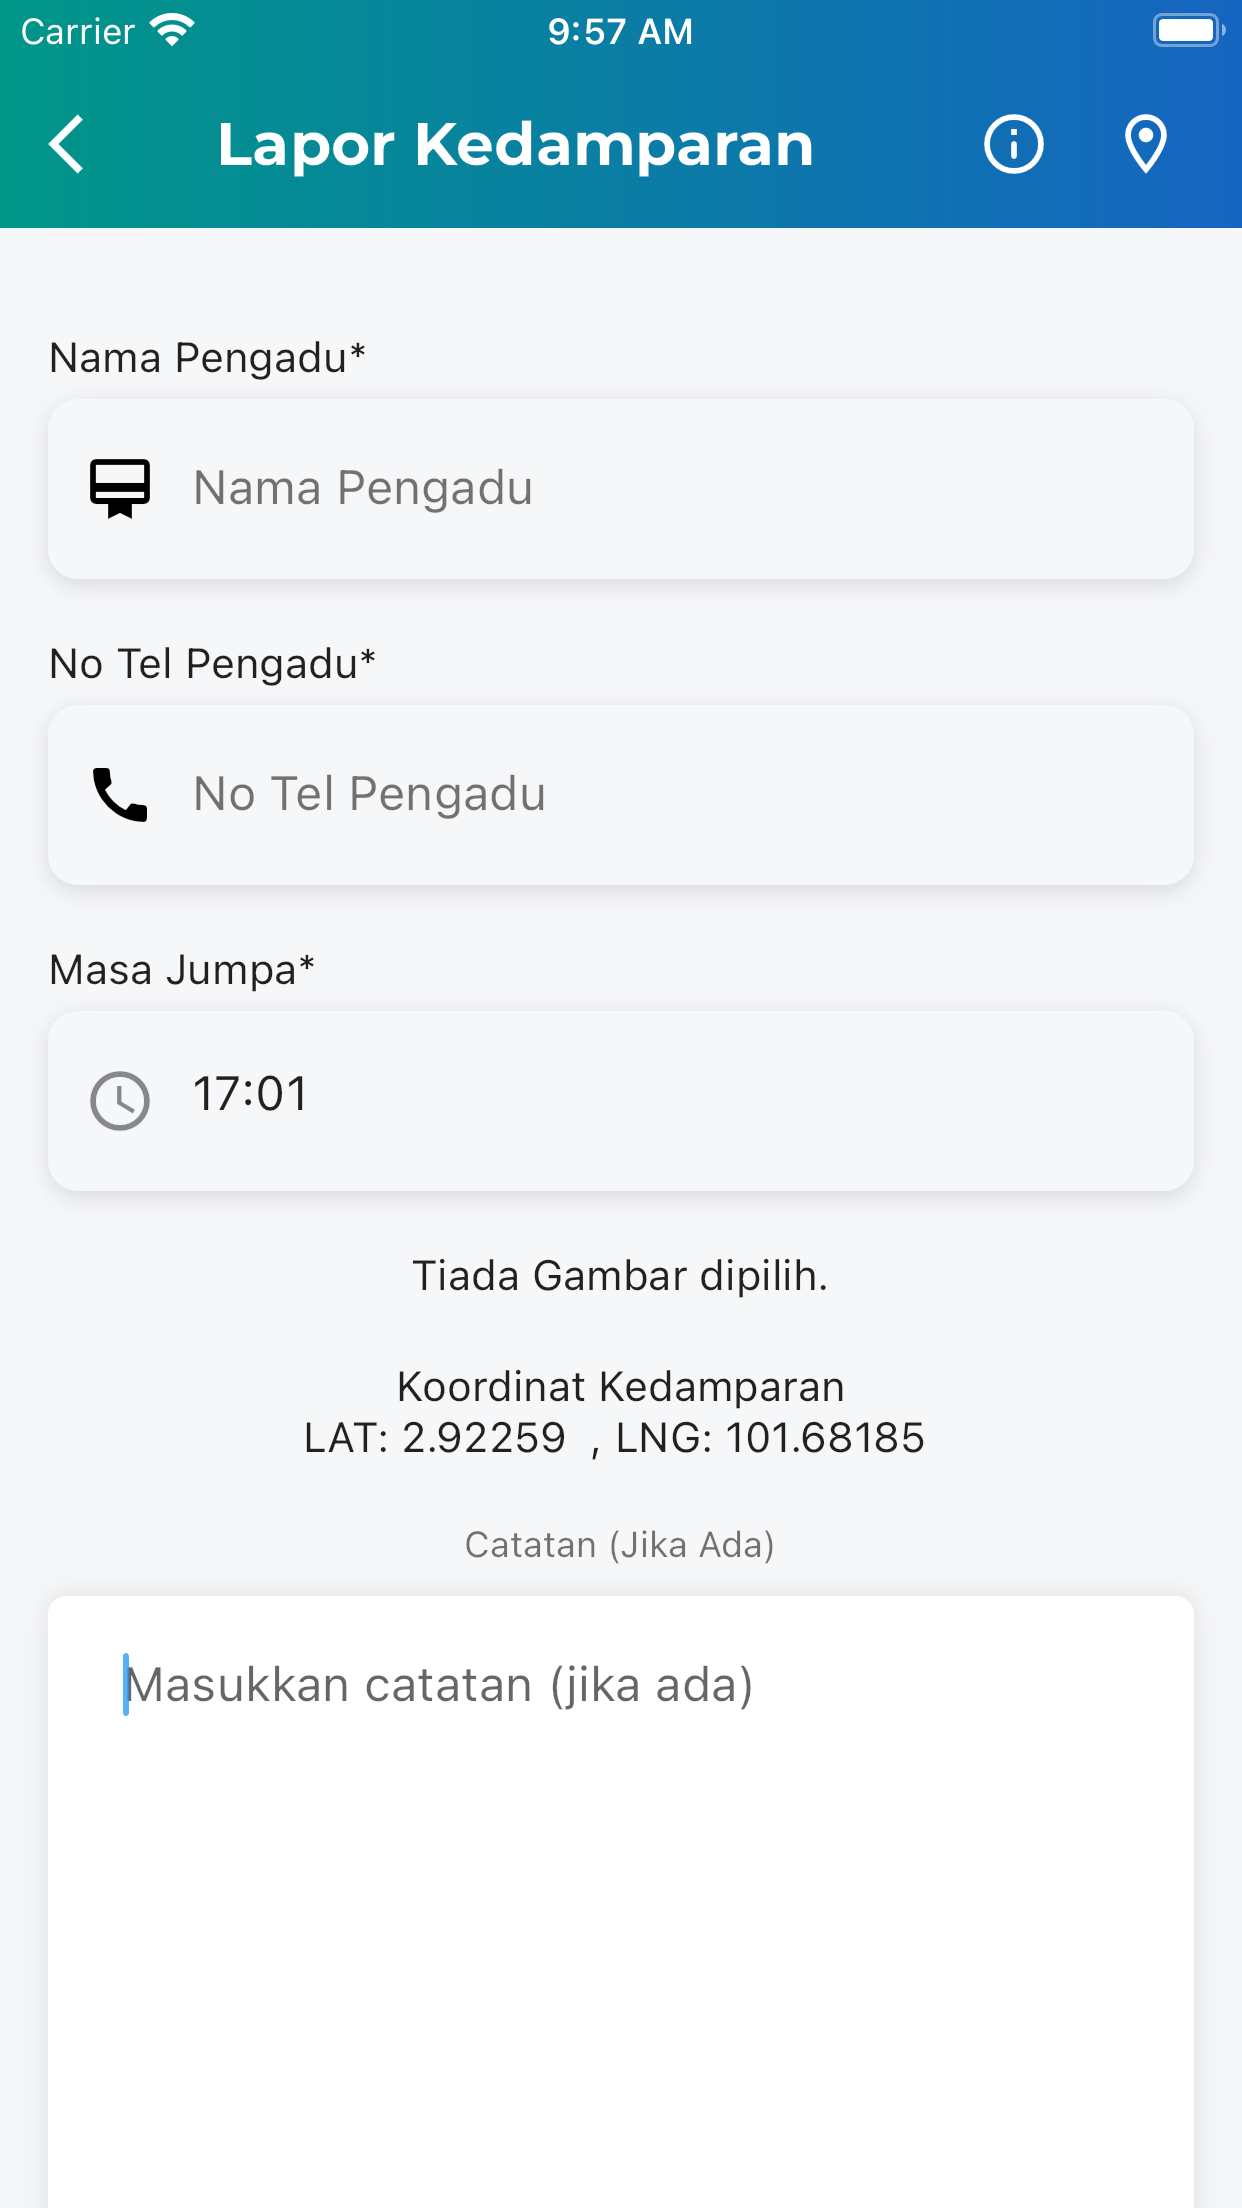 Gamma Galeri Aplikasi Mudah Alih Kerajaan Malaysia 5454